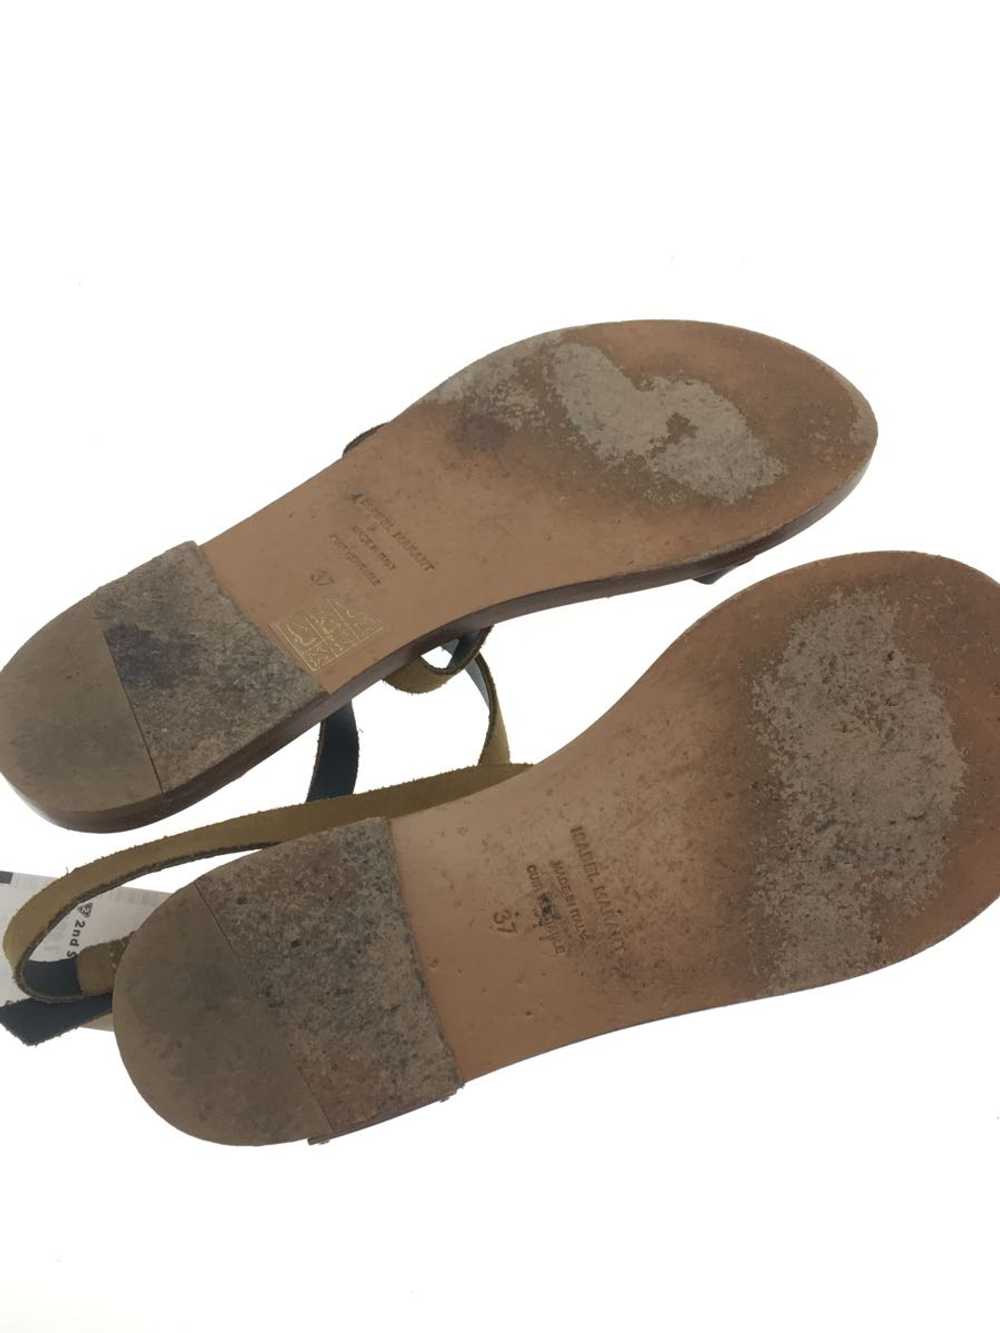 Isabel Marant Sandals/37/Camel/Suede Shoes BLr22 - image 4